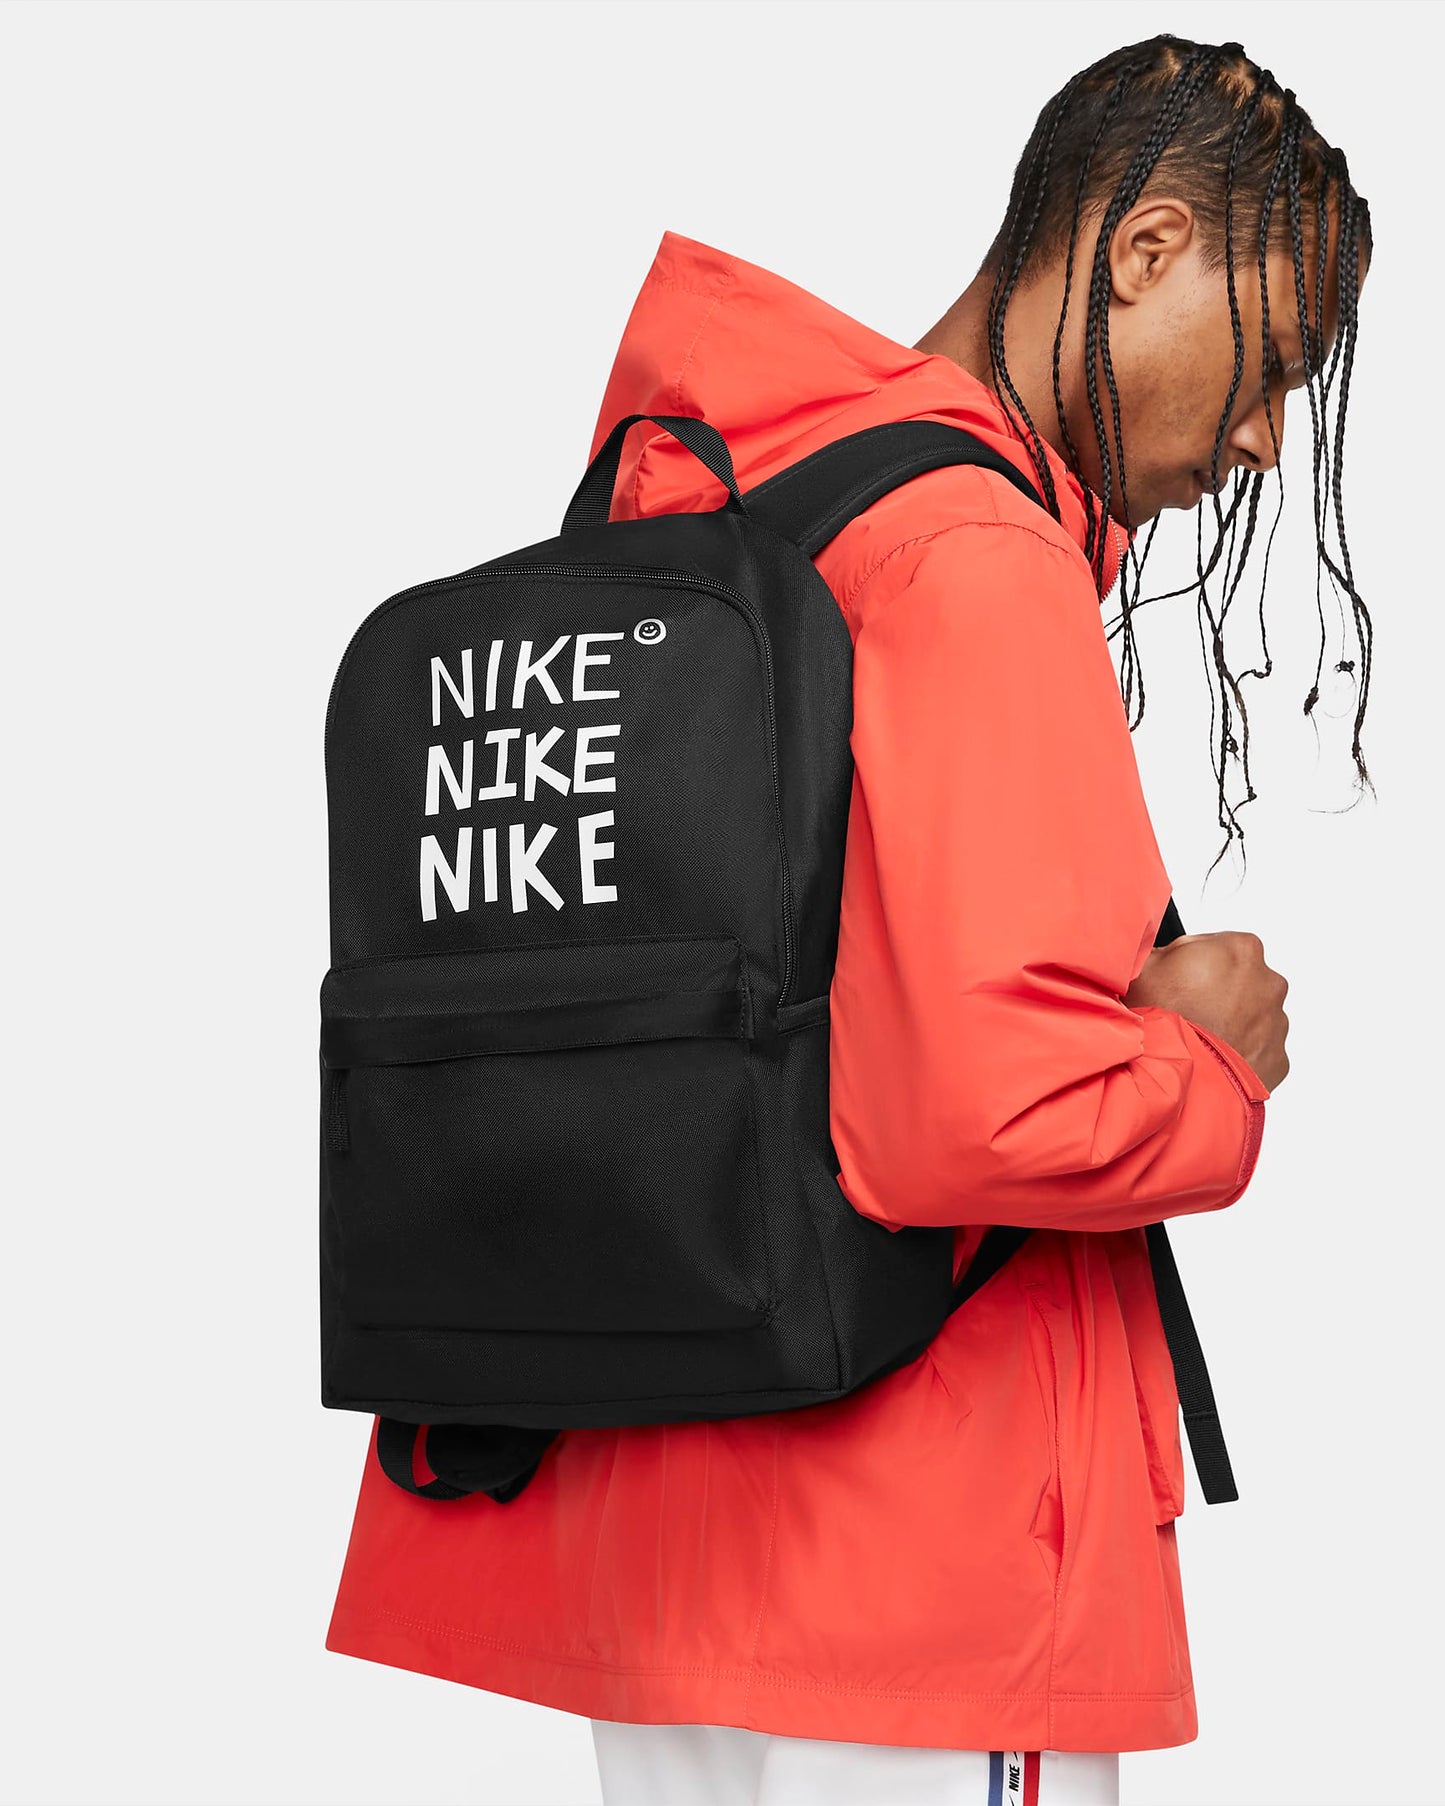 Juodos spalvos Nike kuprinė su užrašais